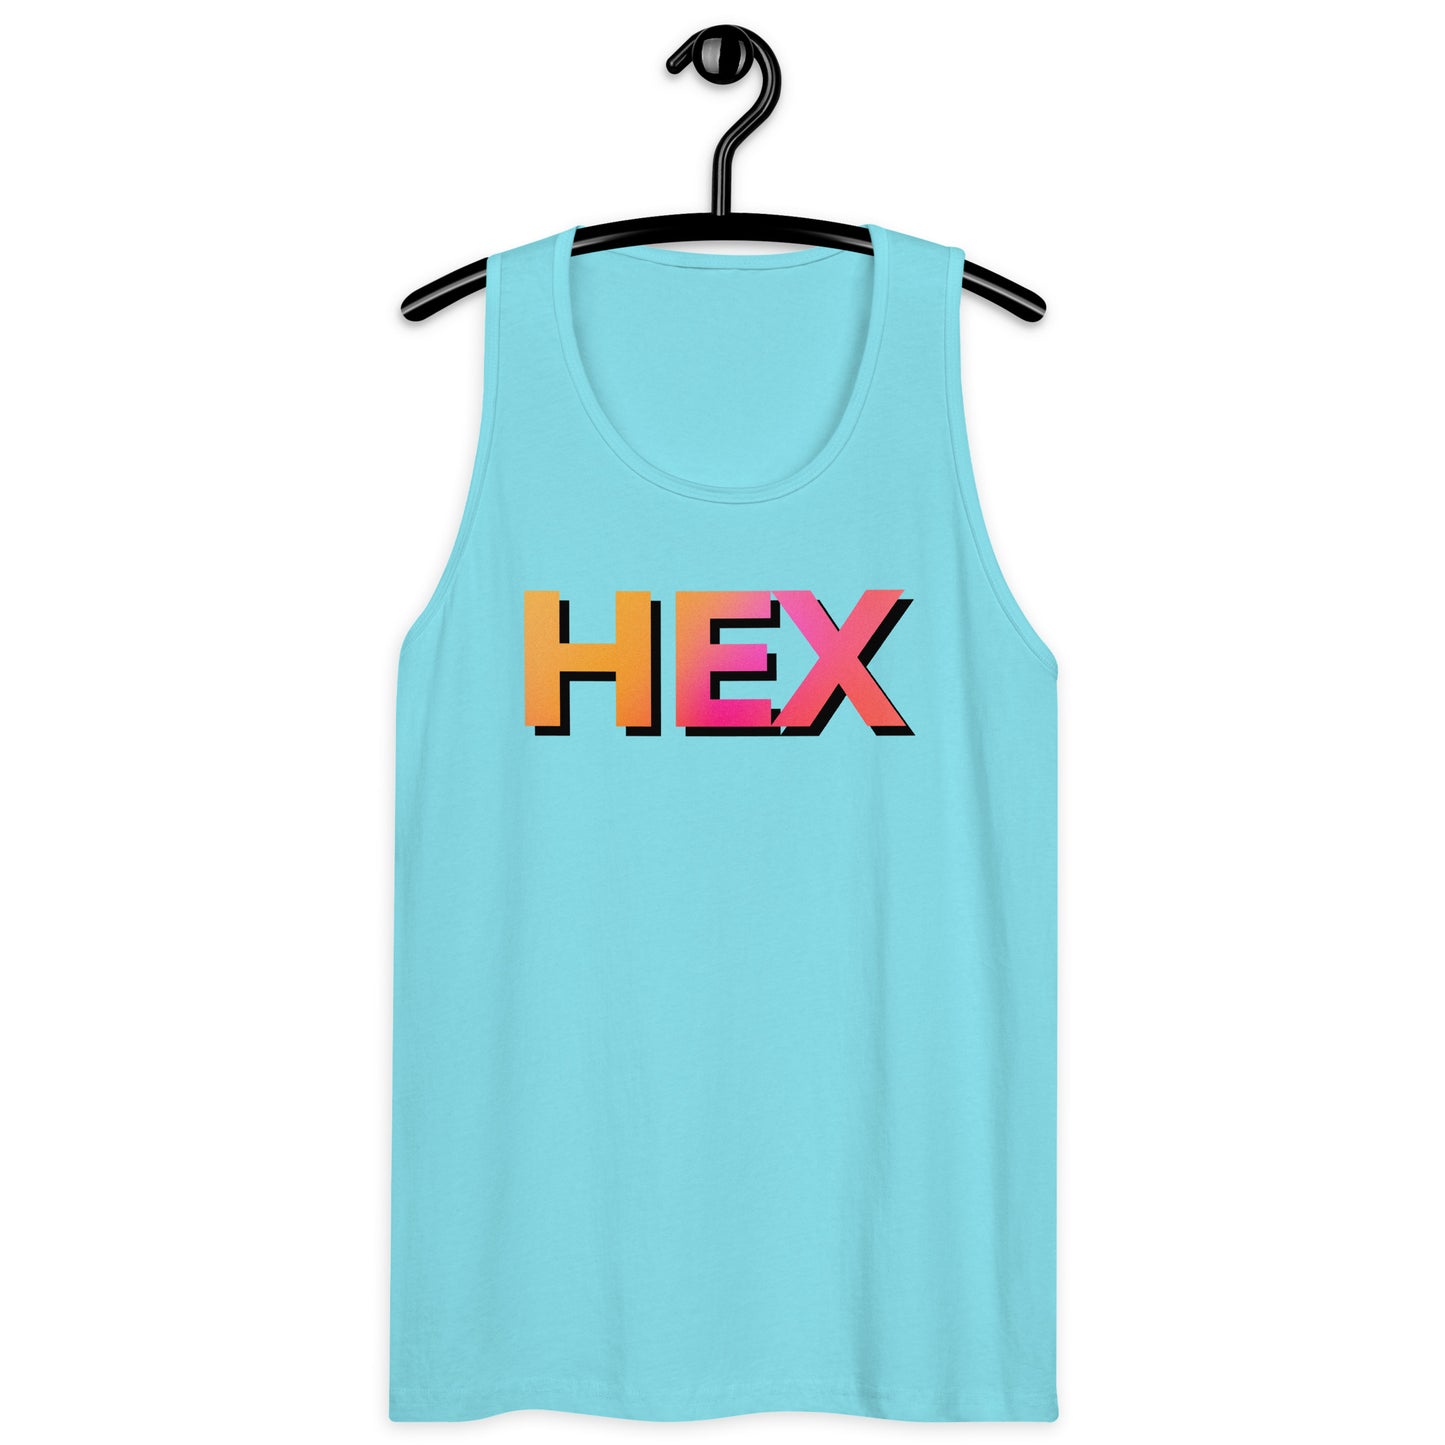 HEX Men’s Premium Tank Top